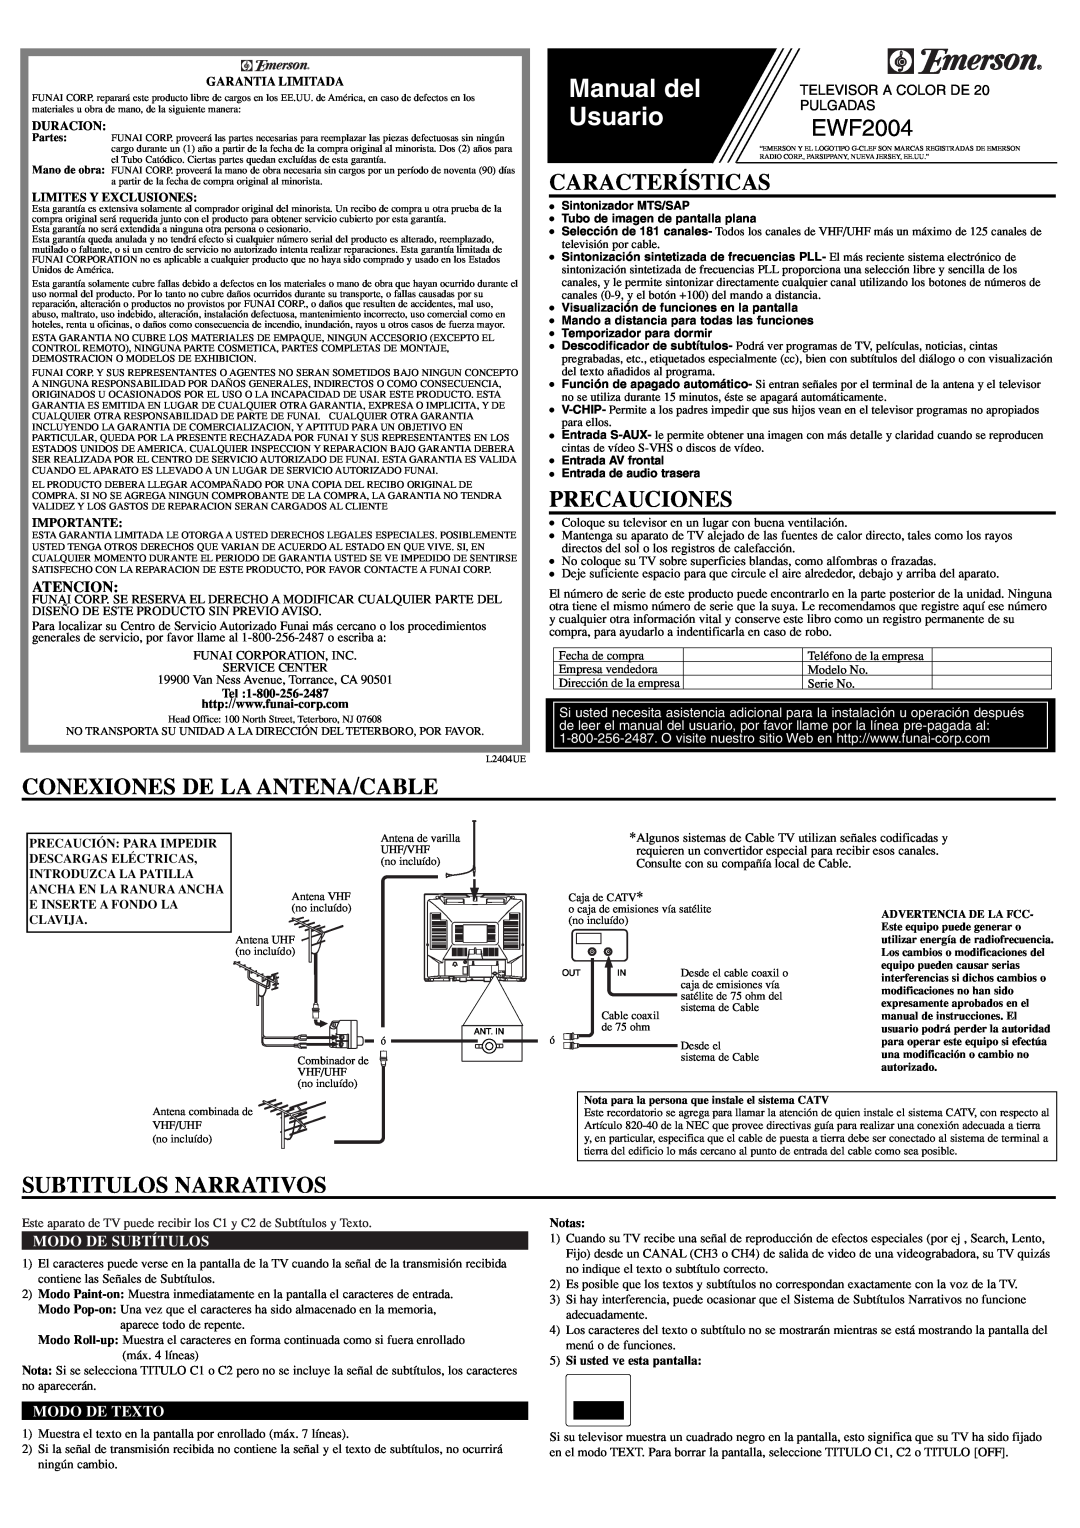 Emerson EWF2004 Características, Precauciones, Conexiones De La Antena/Cable, Subtitulos Narrativos, Atencion, Manual del 